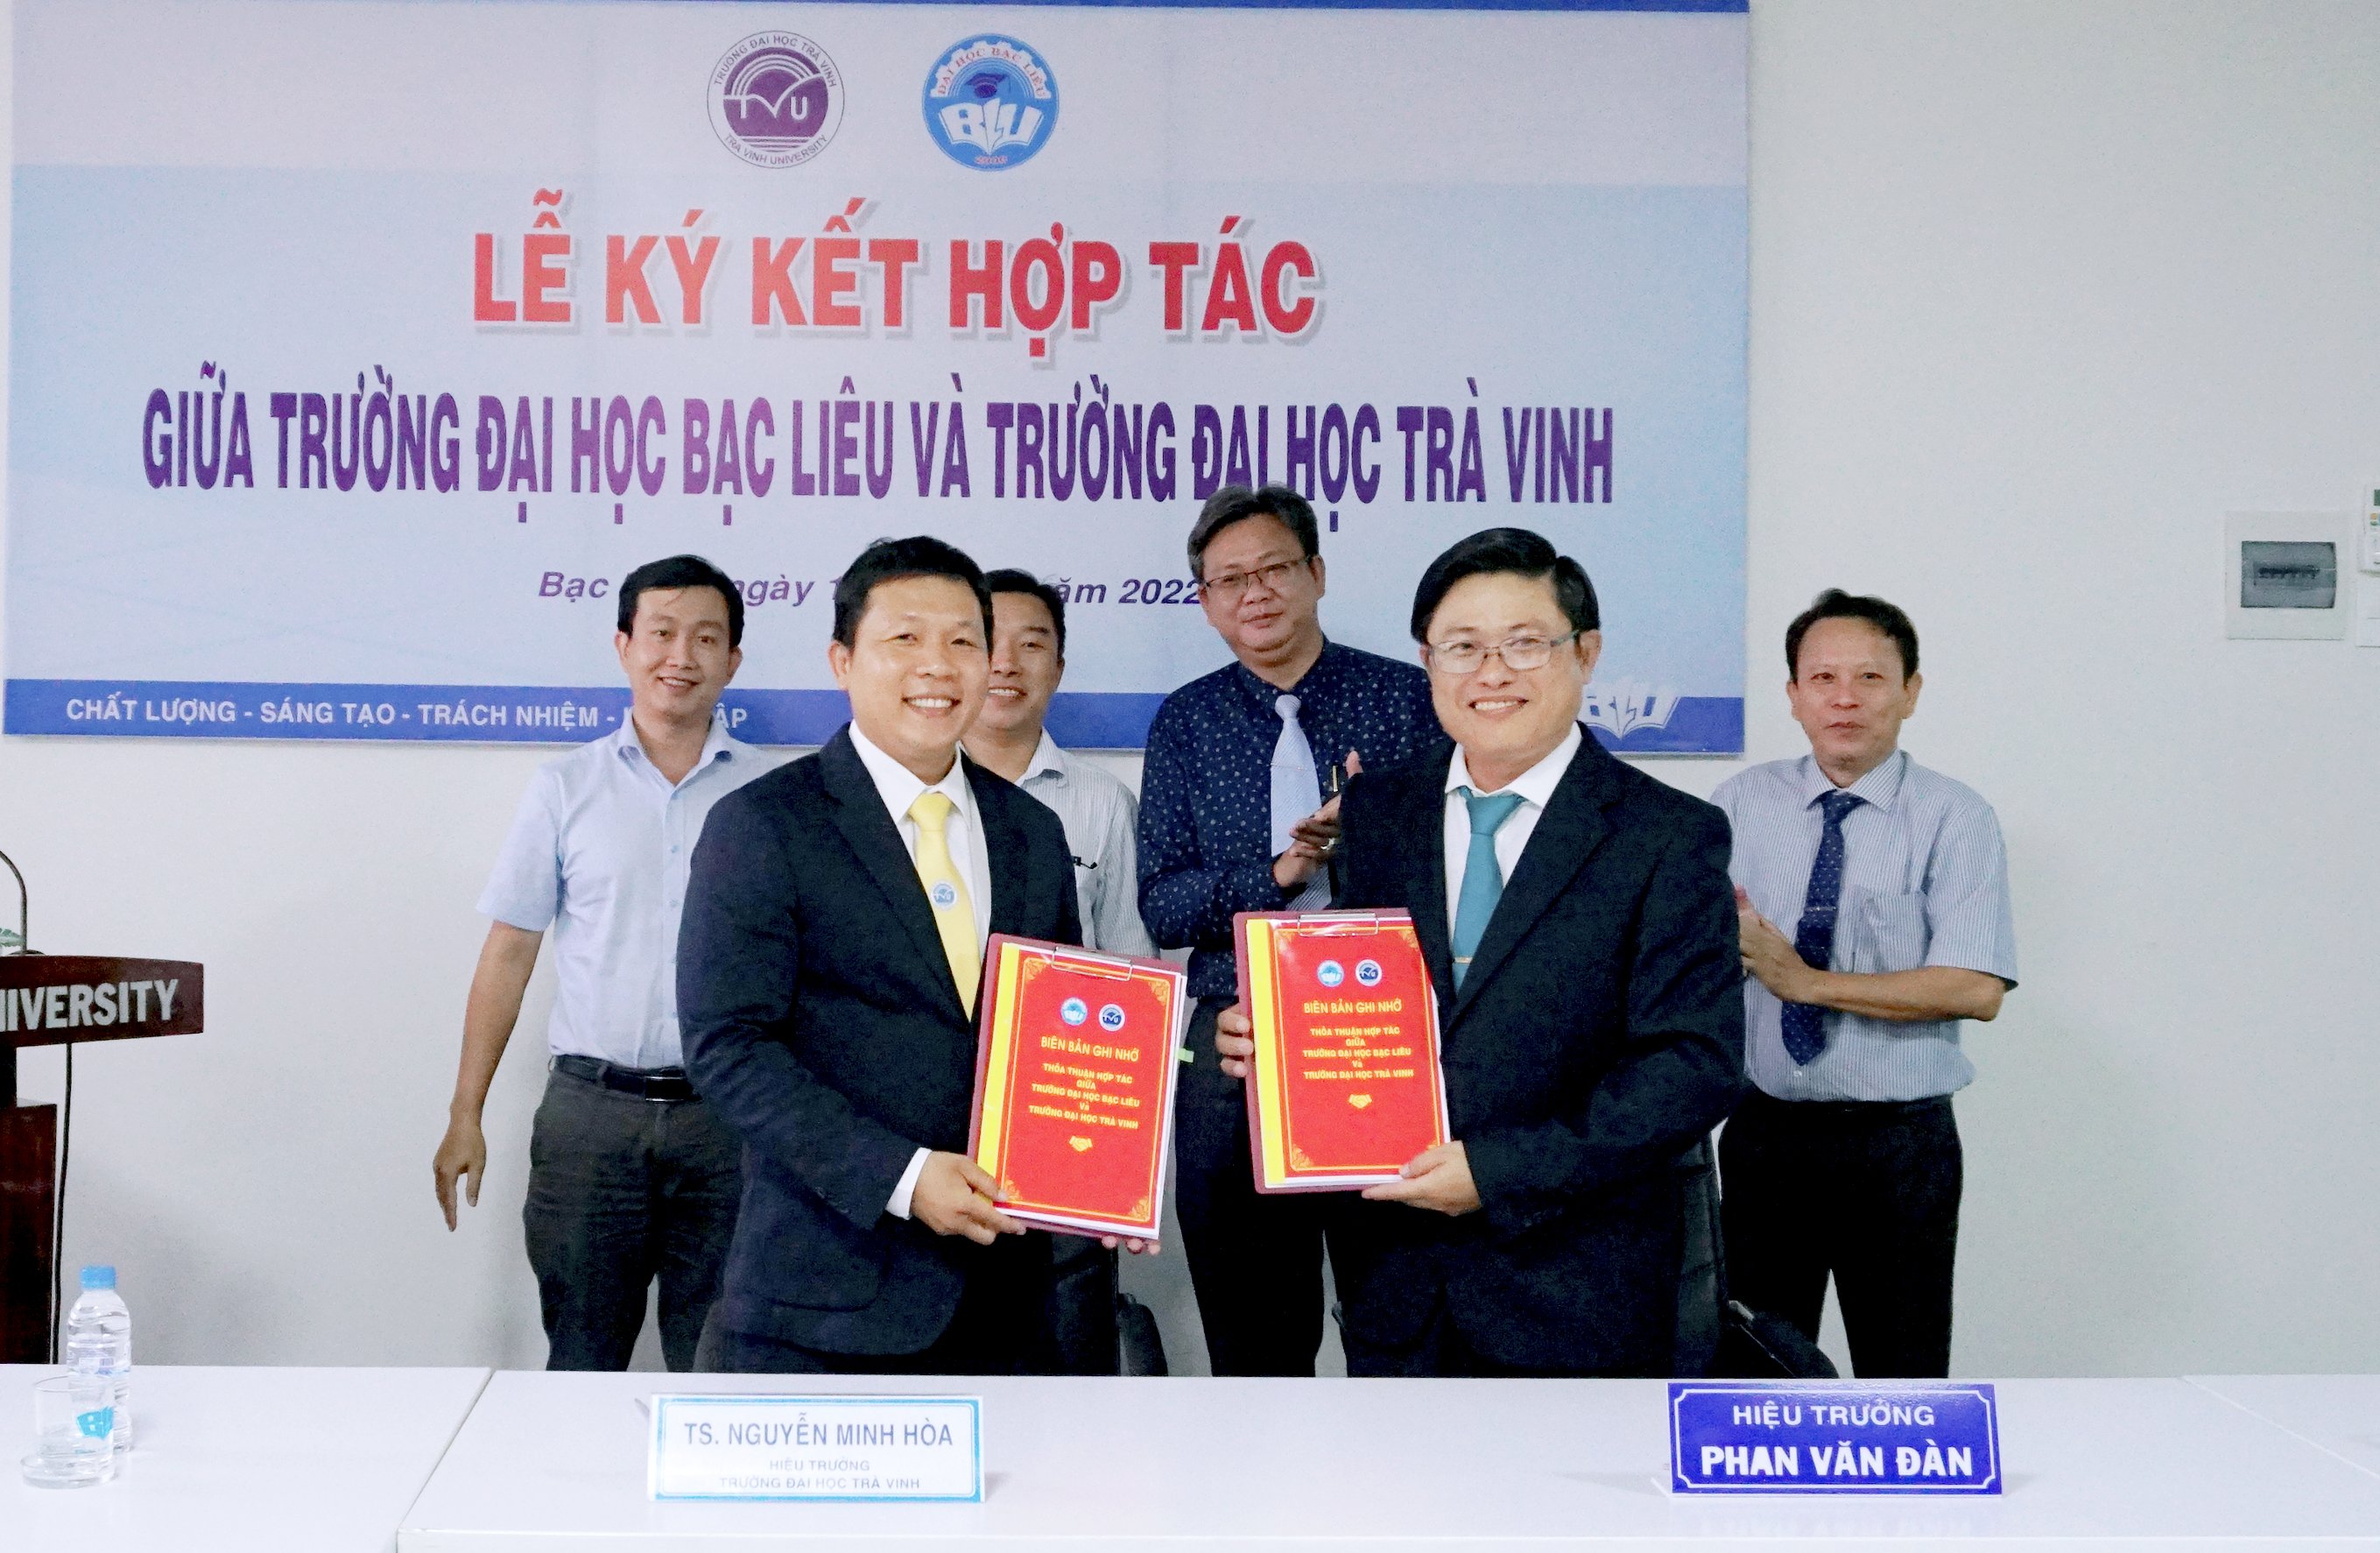 Trường Đại học Bạc Liêu ký hợp tác với Trường Đại học Trà Vinh trong đào tạo và Nghiên cứu khoa học